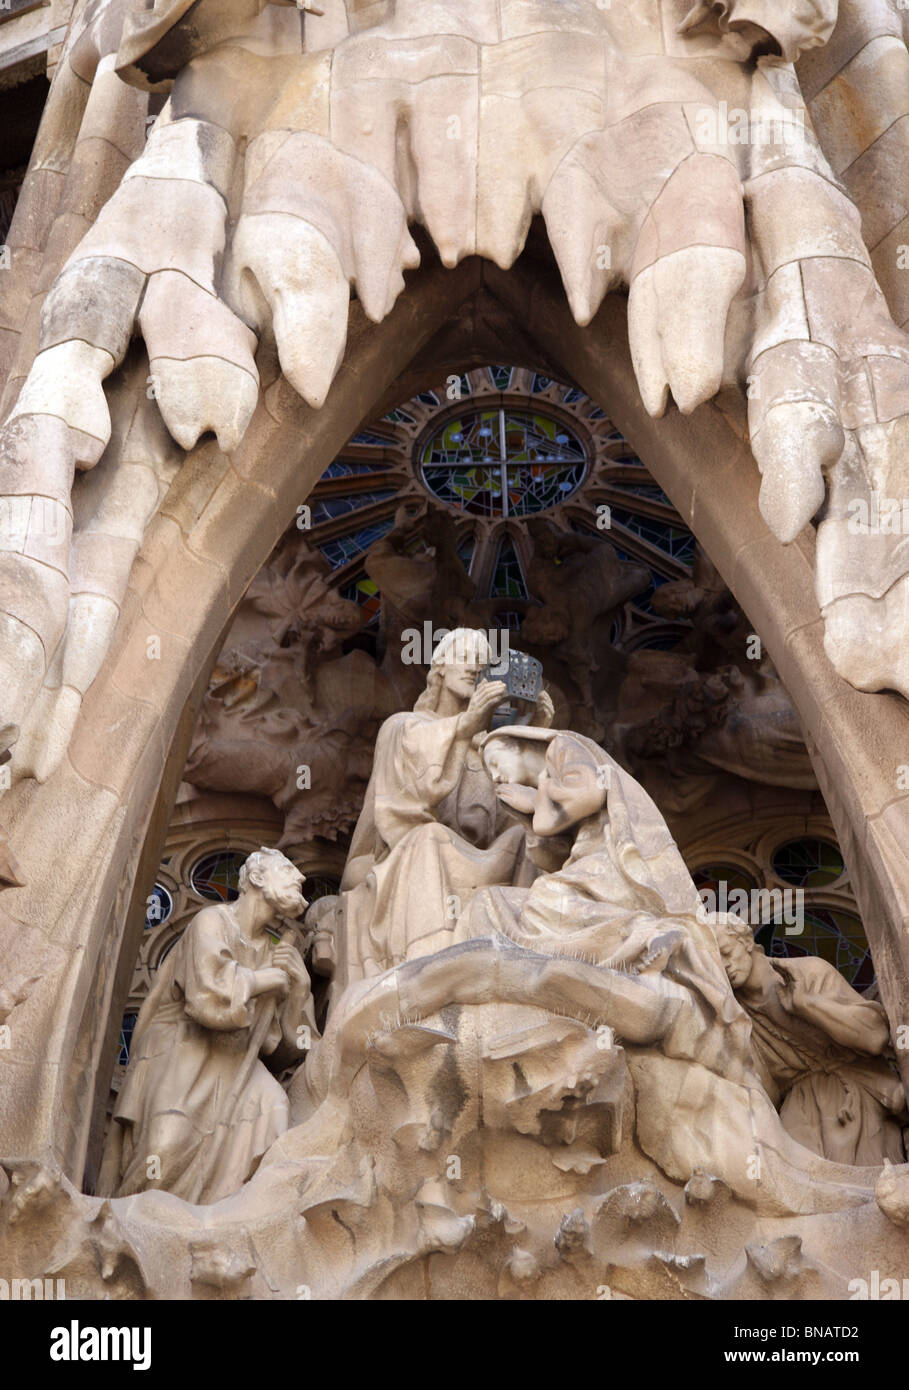 Religiöse STATUEN AN DER AUSSENSEITE VON Gaudis Kathedrale SAGRADA FAMILIA IN BARCELONA, SPANIEN Stockfoto